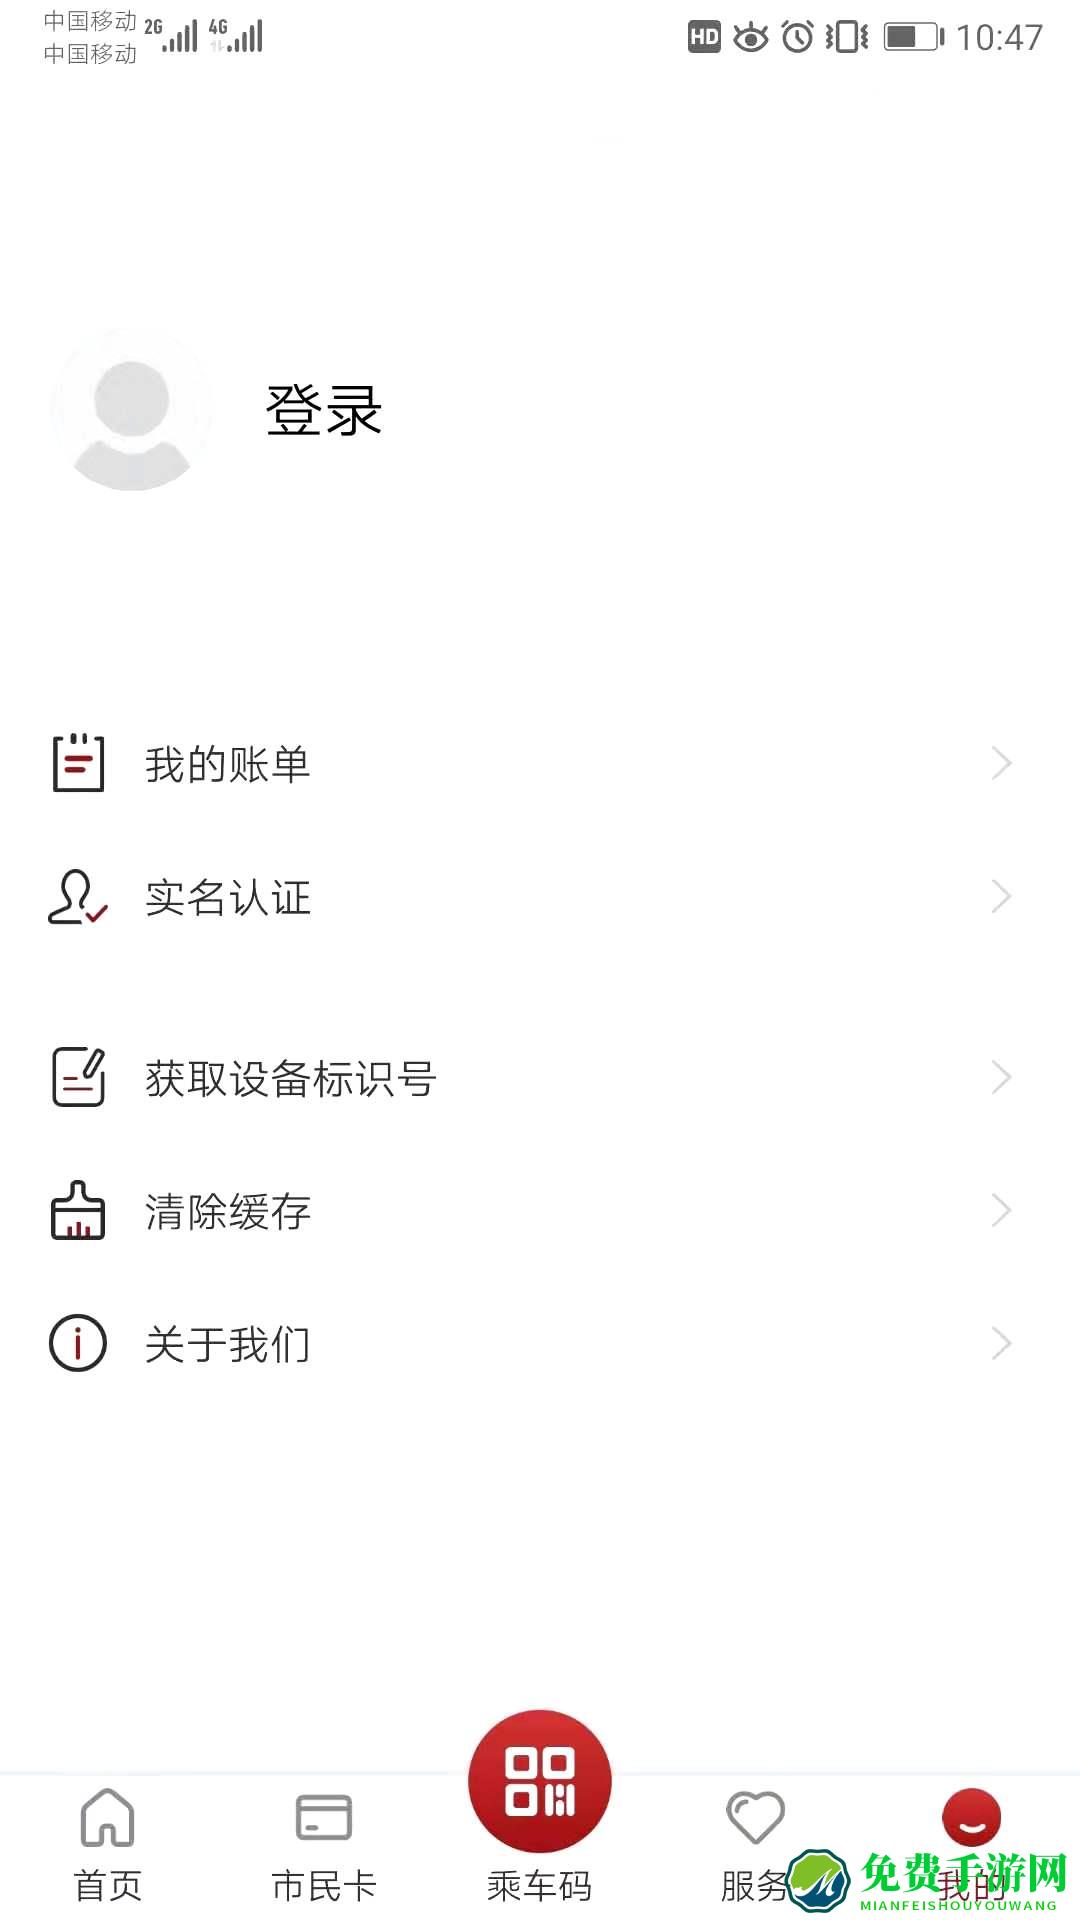 徐州市民卡手机版